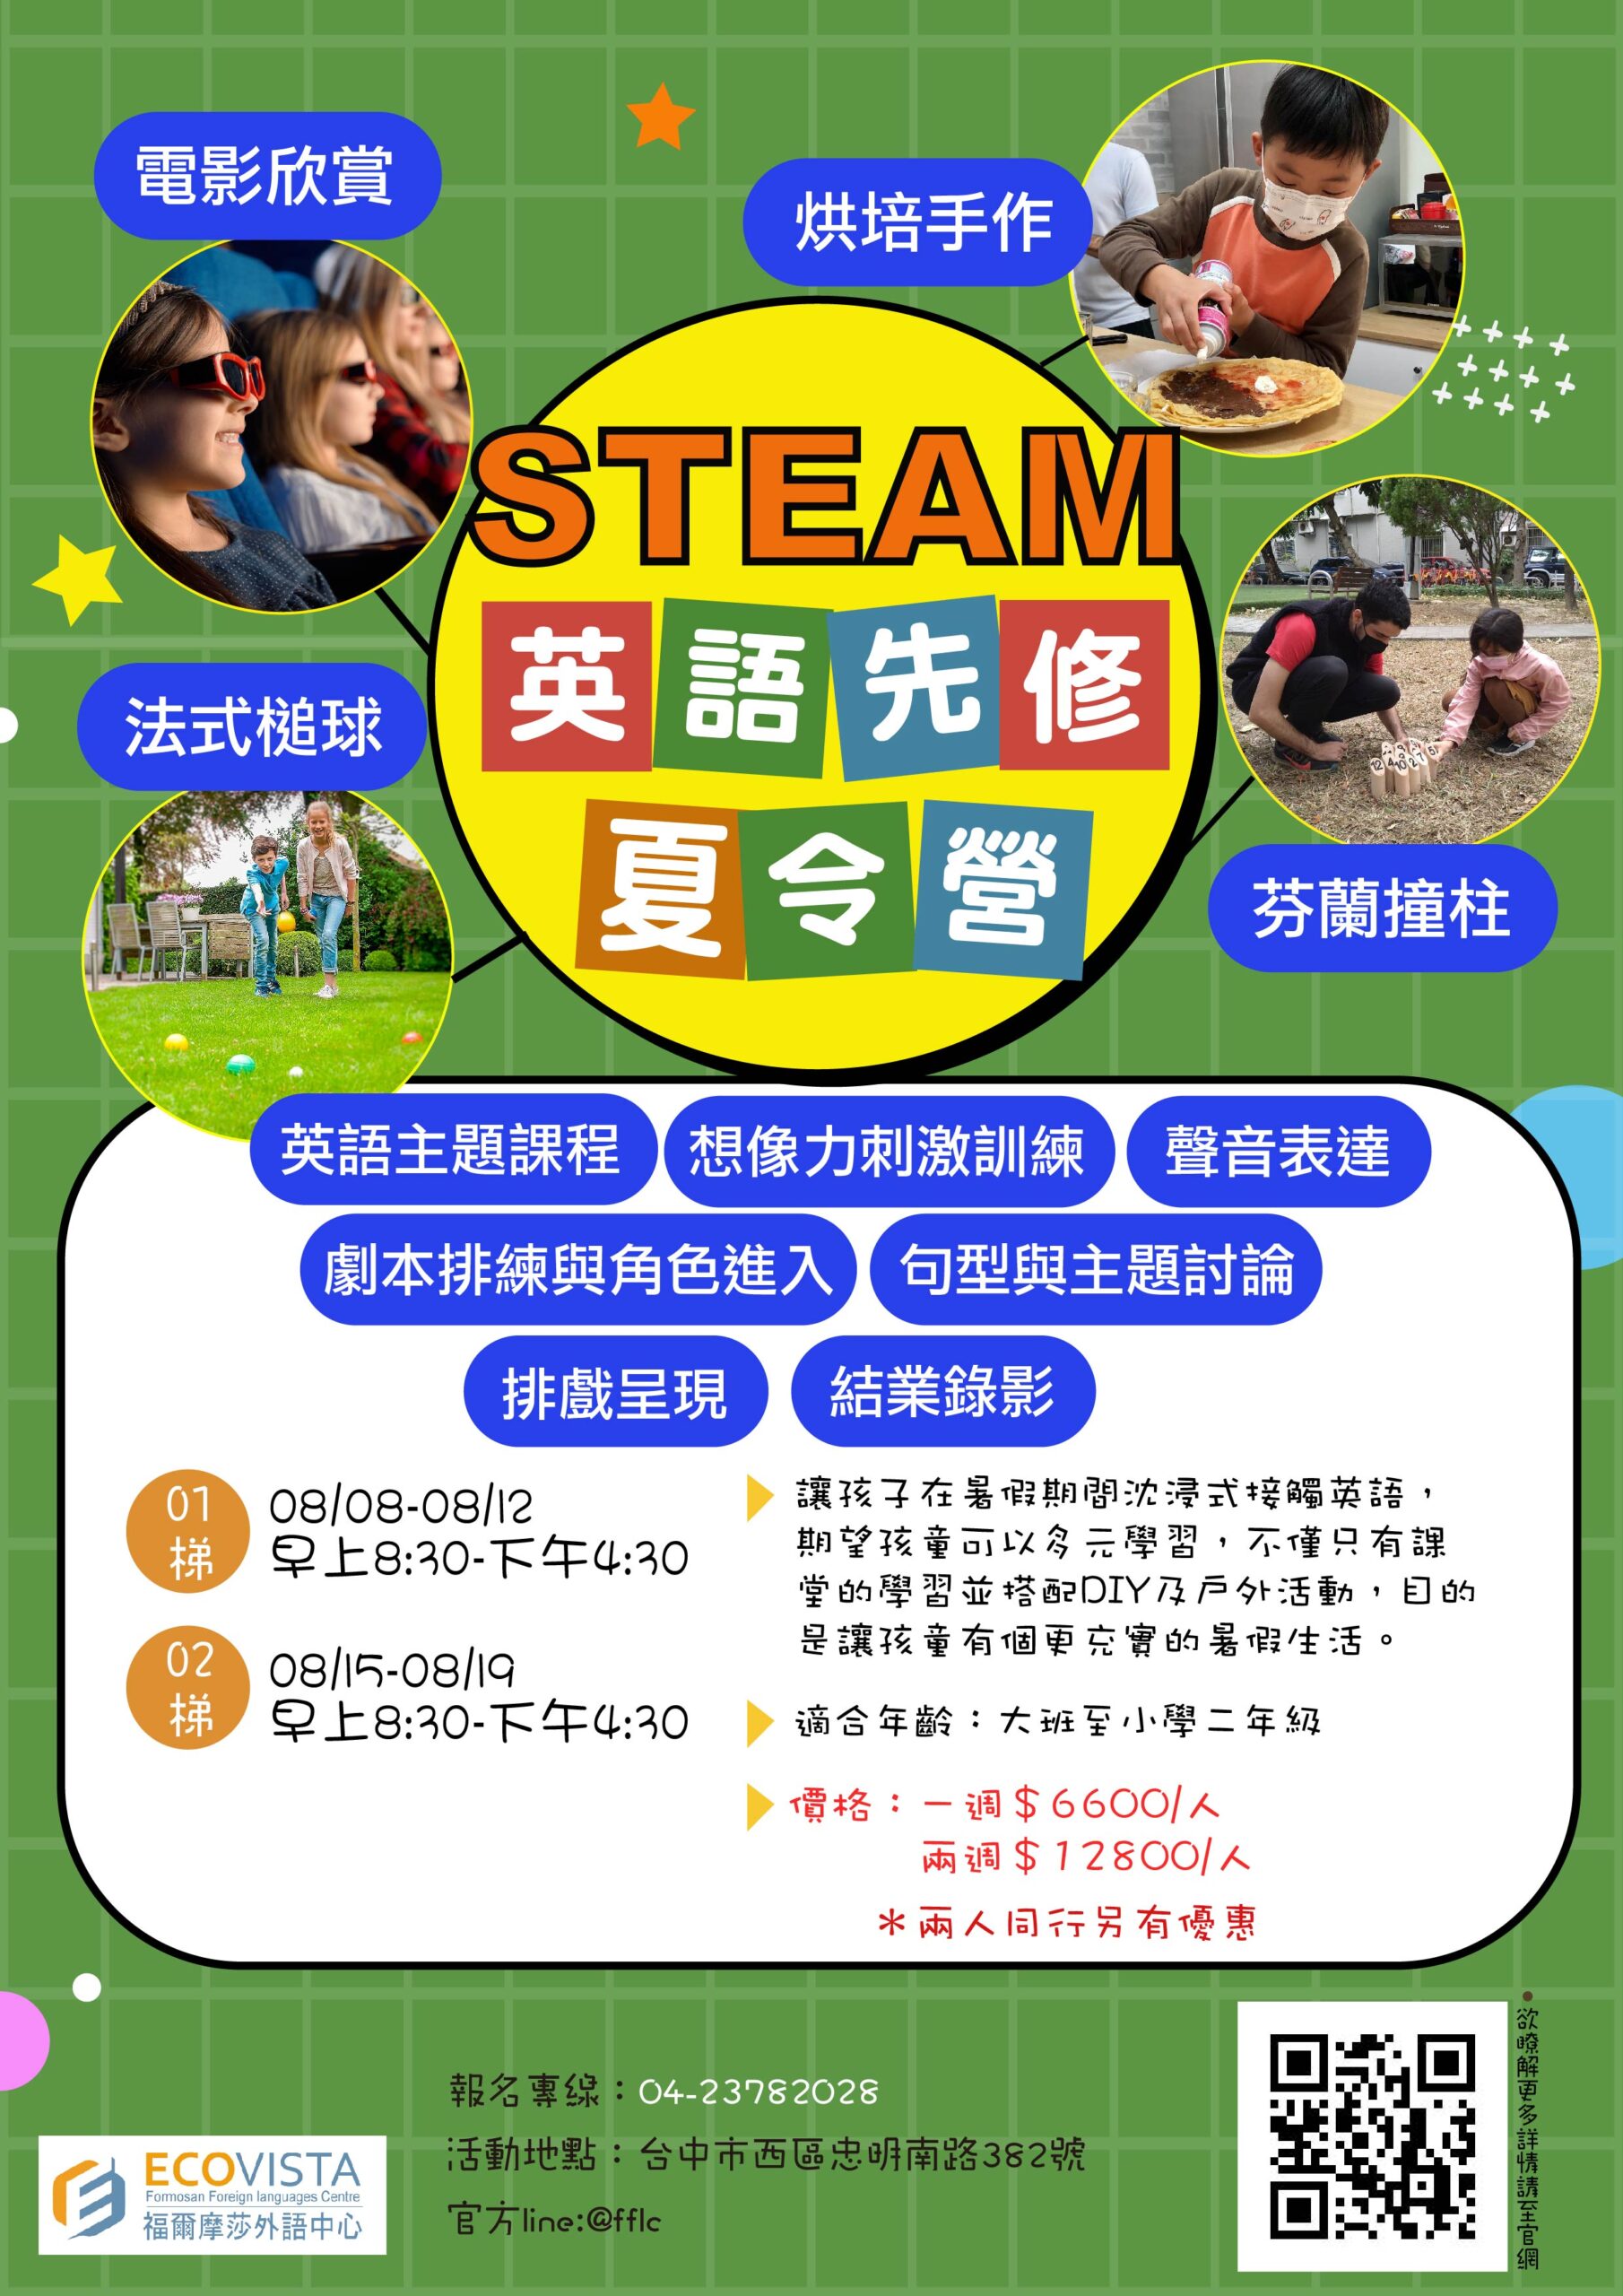 [廣宣] 暑假台中夏令營推薦STEAM英語先修營隊